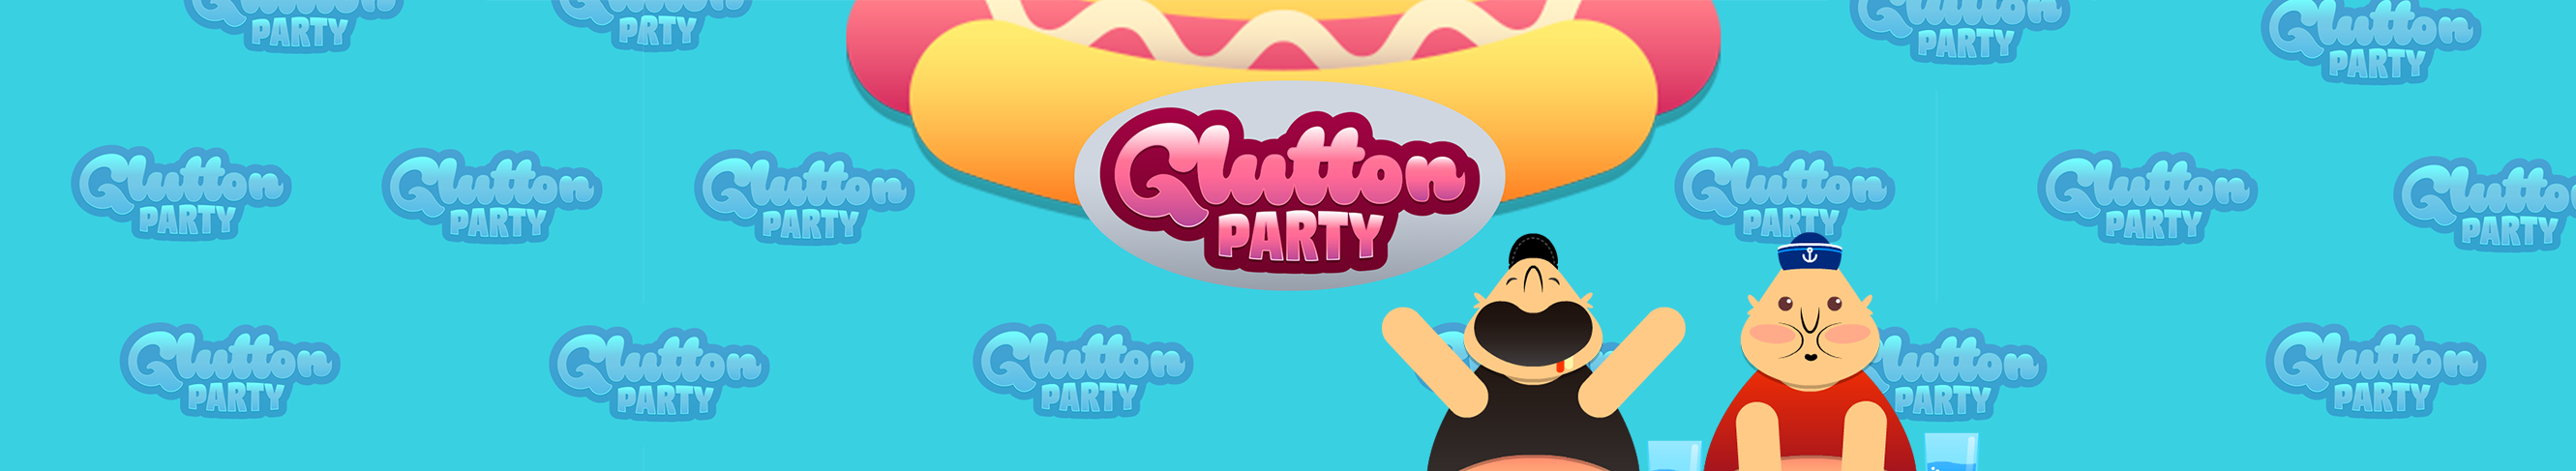 Glutton Party